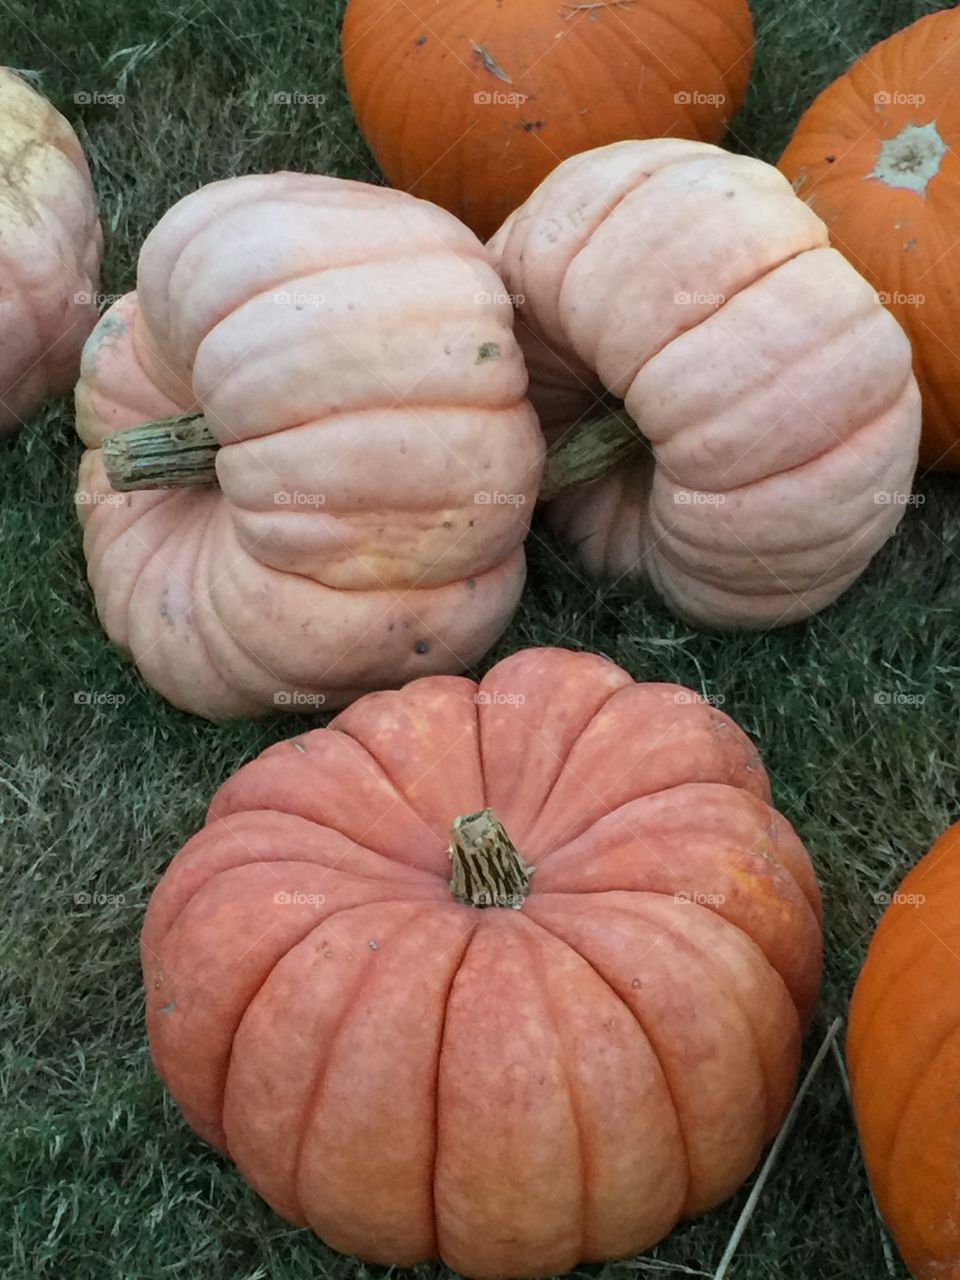 Peachy pumpkins